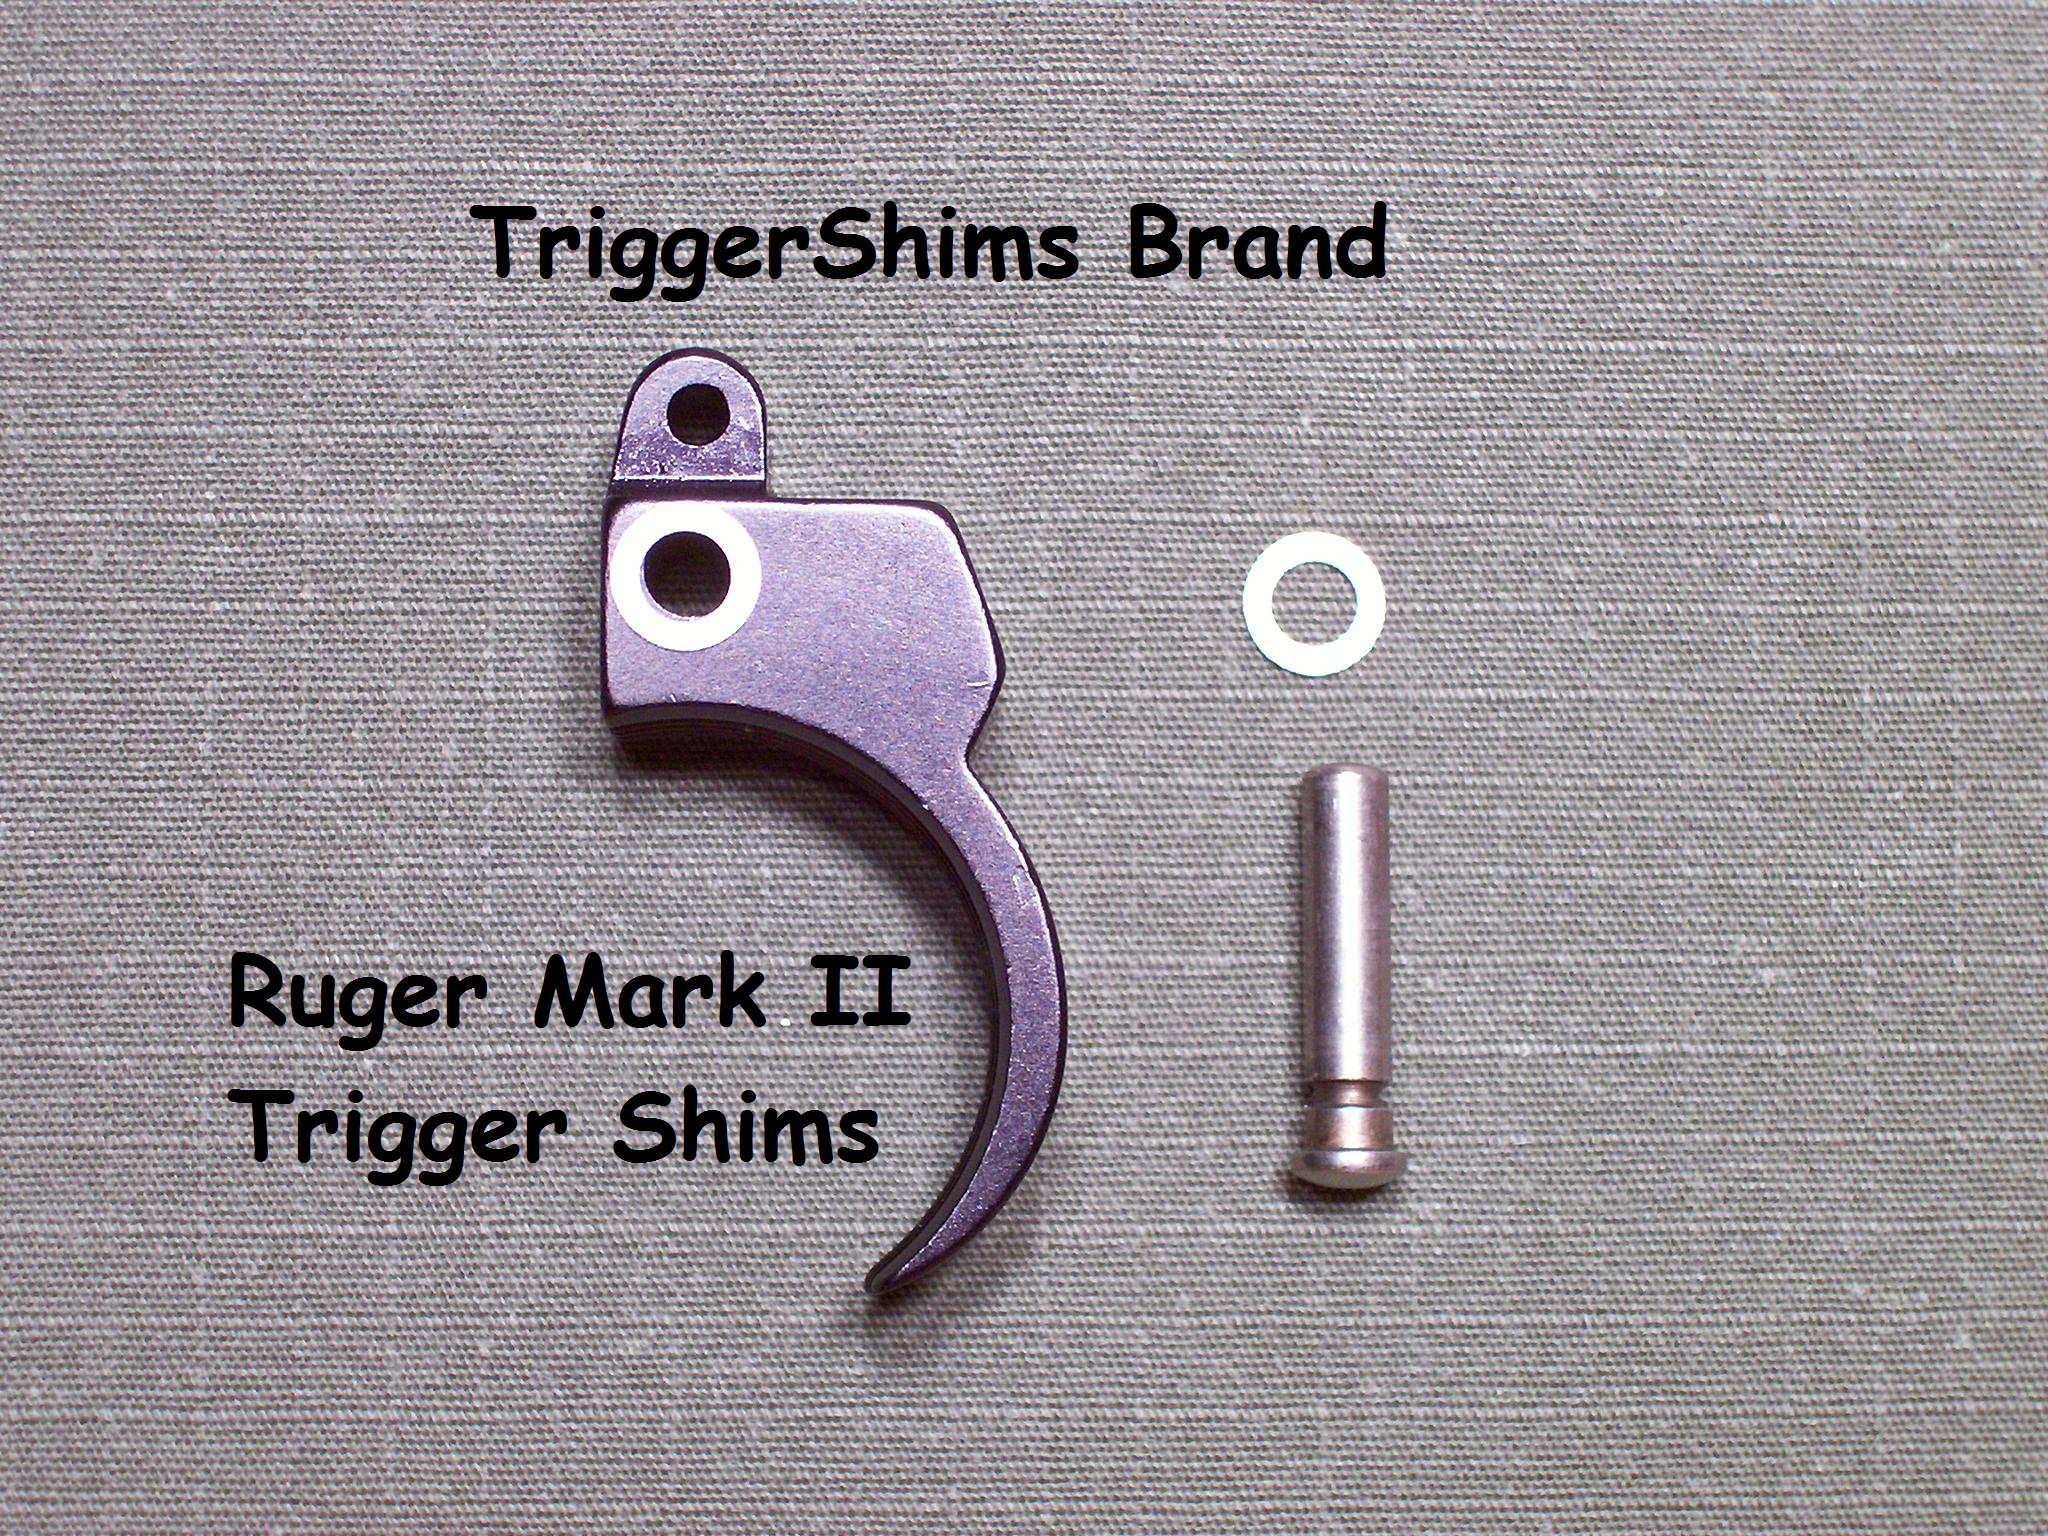 Mark II Trigger Shims